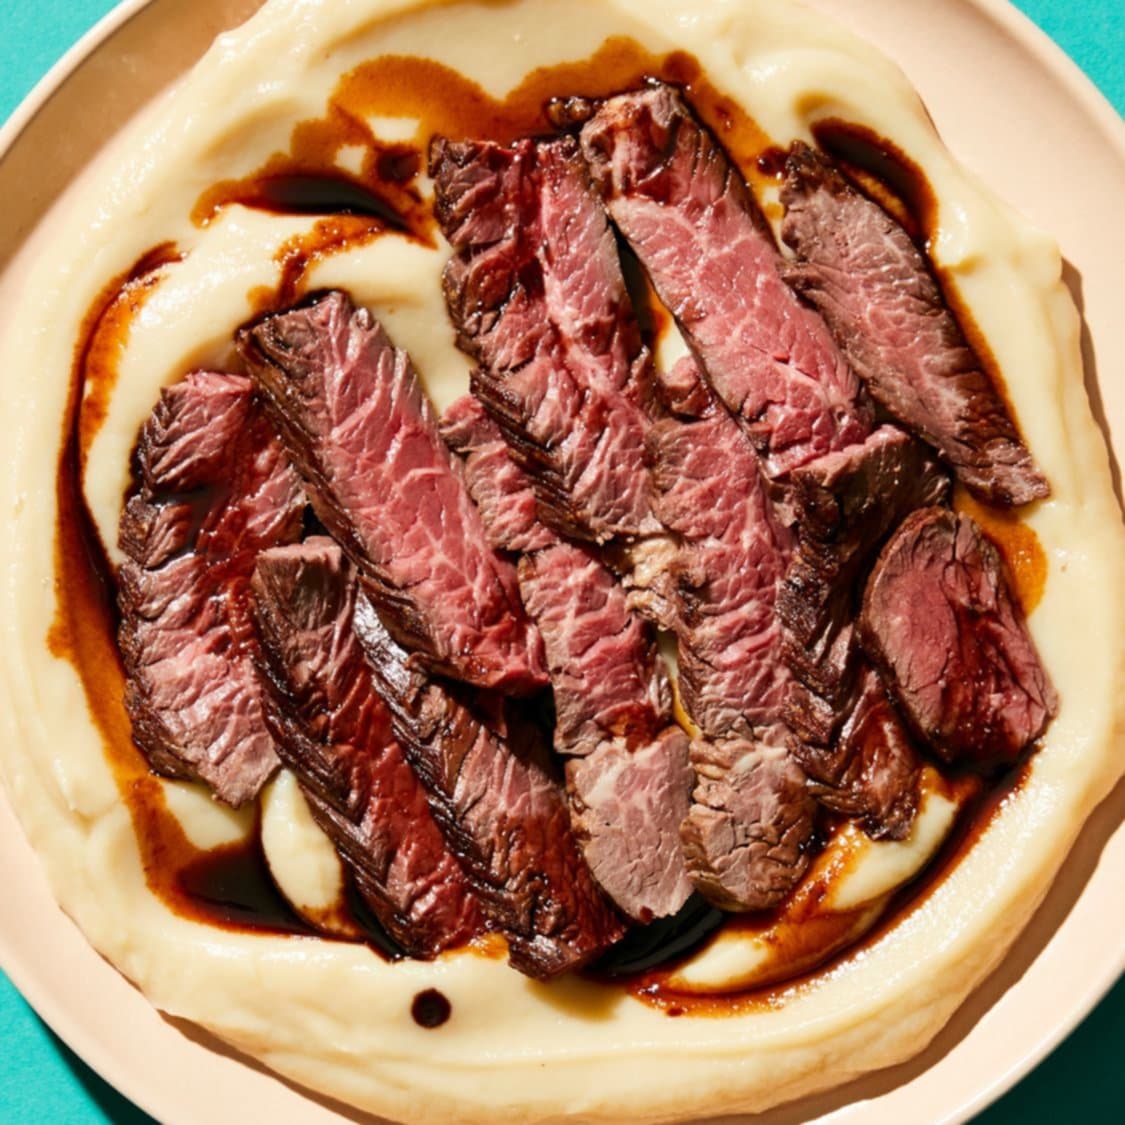 https://fleishigs.com/images/mobile-app/recipes/1993-list-sous-vide-hanger-steak.jpg